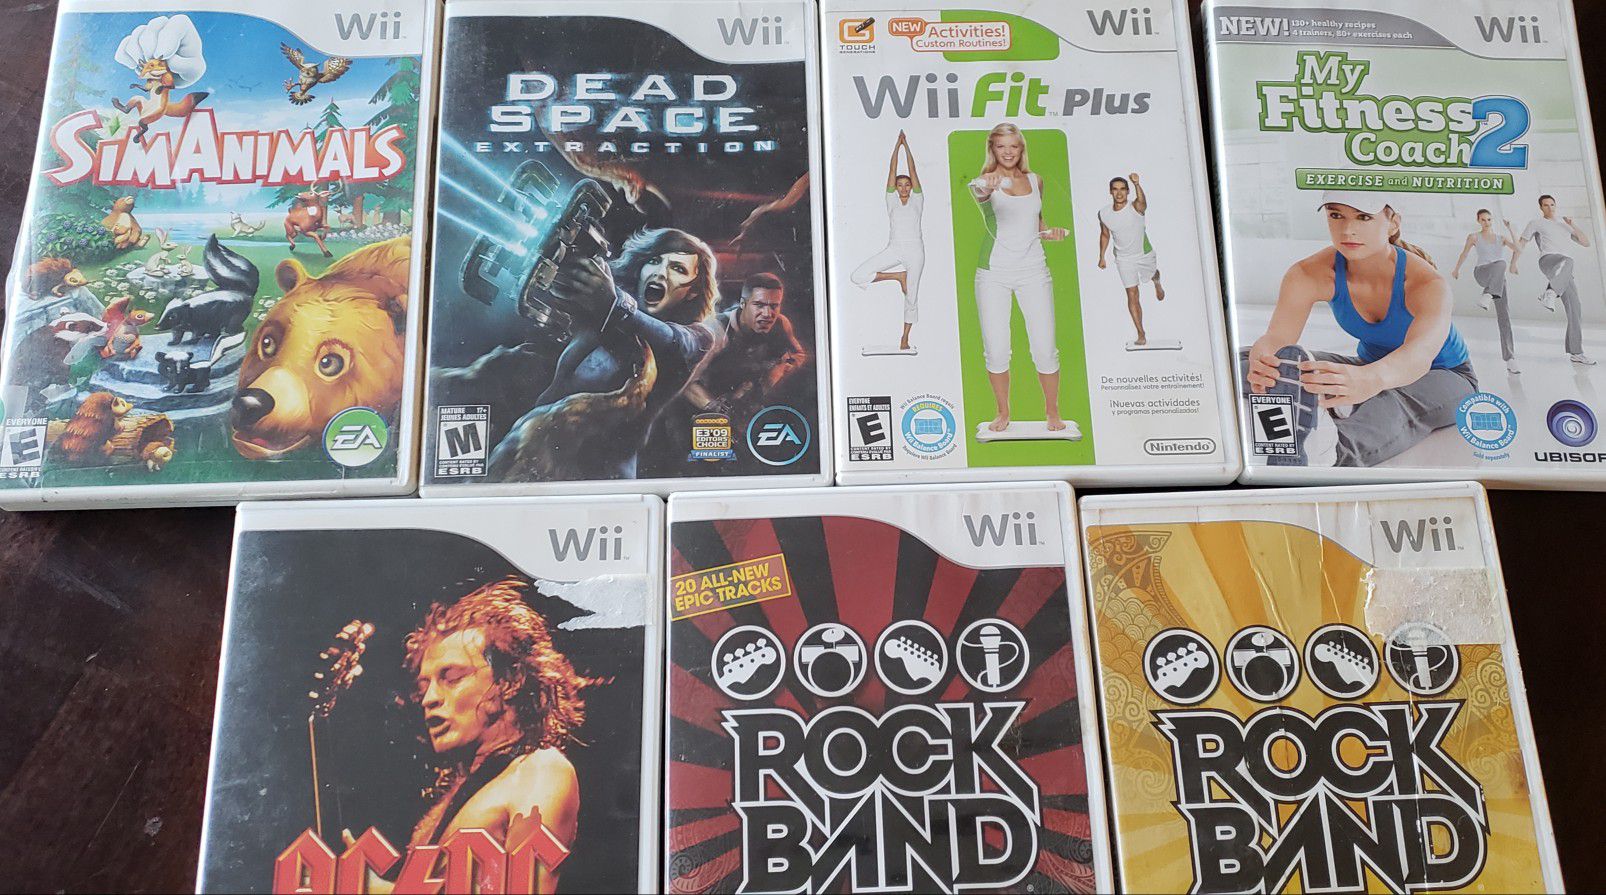 Wii games & Rockband tracks